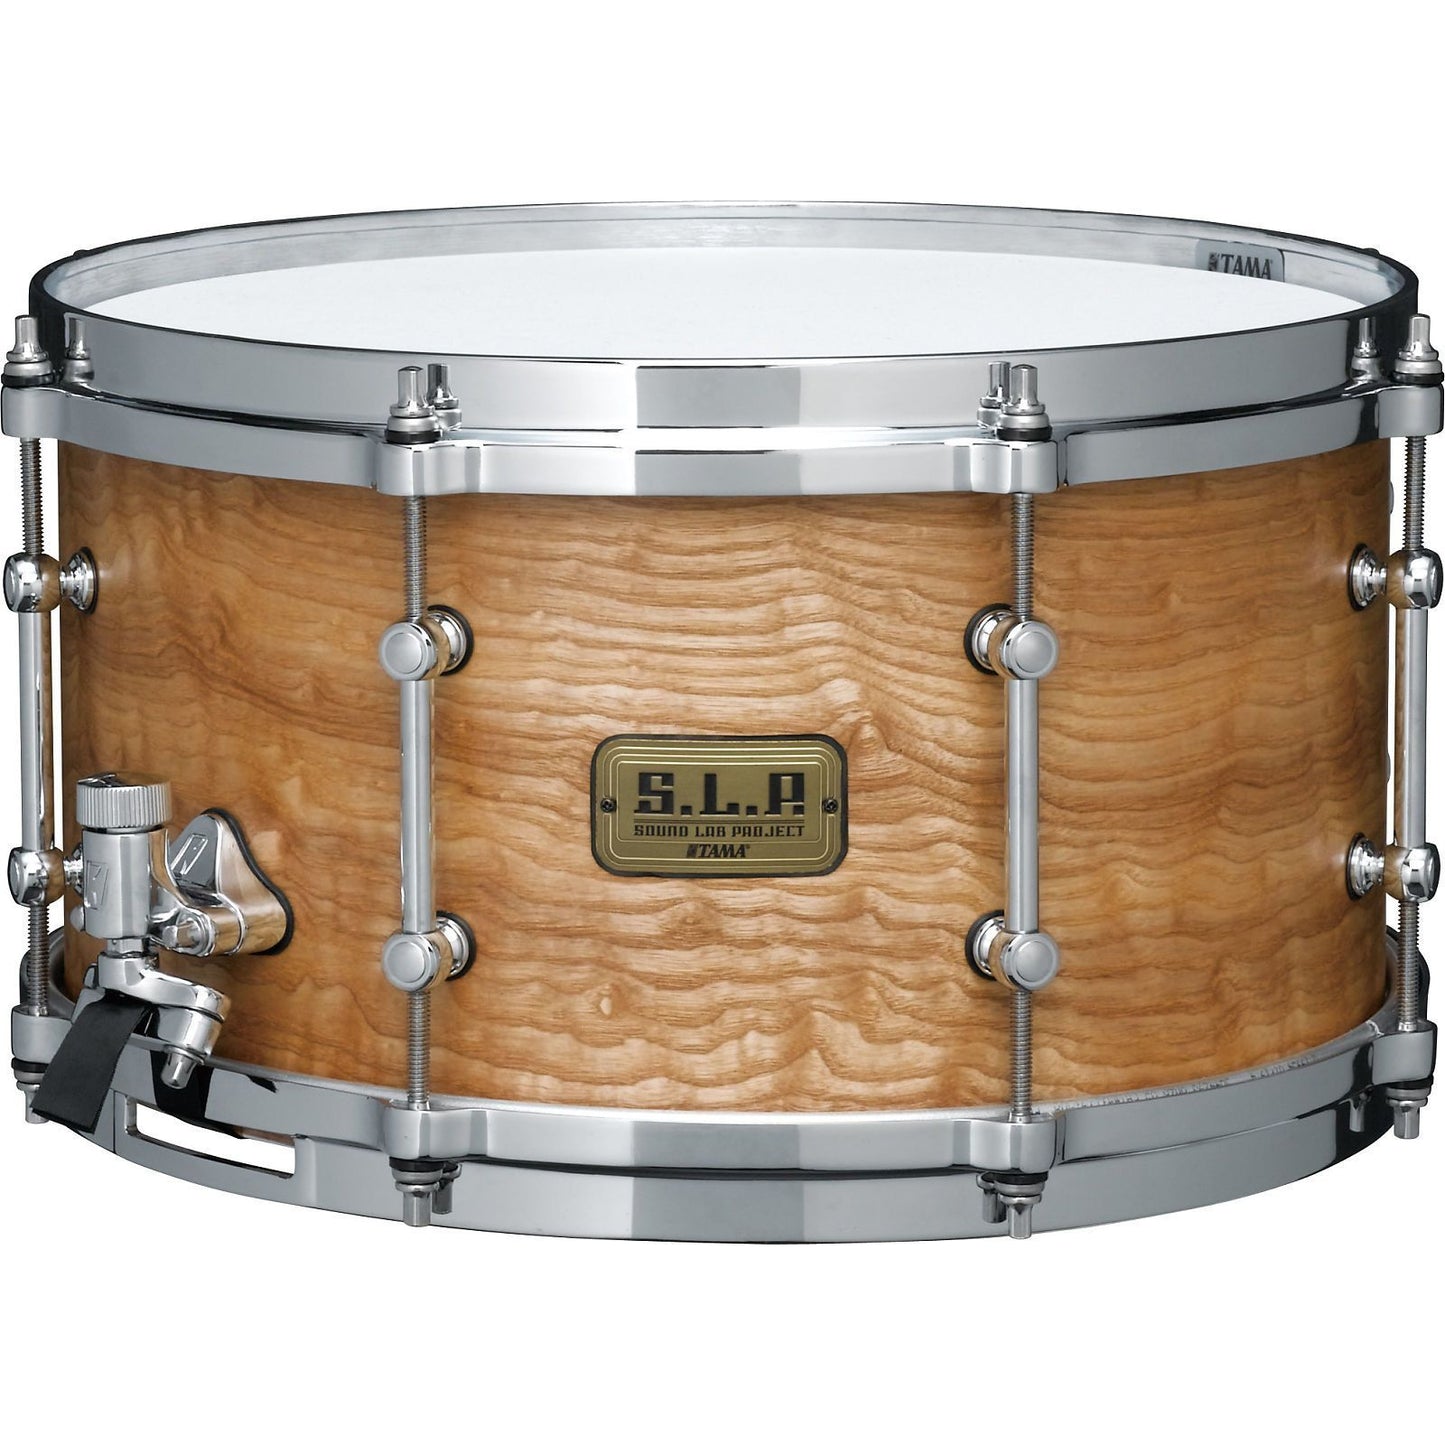 Tama SLP G Maple Snare Drum, 7x13 Inch